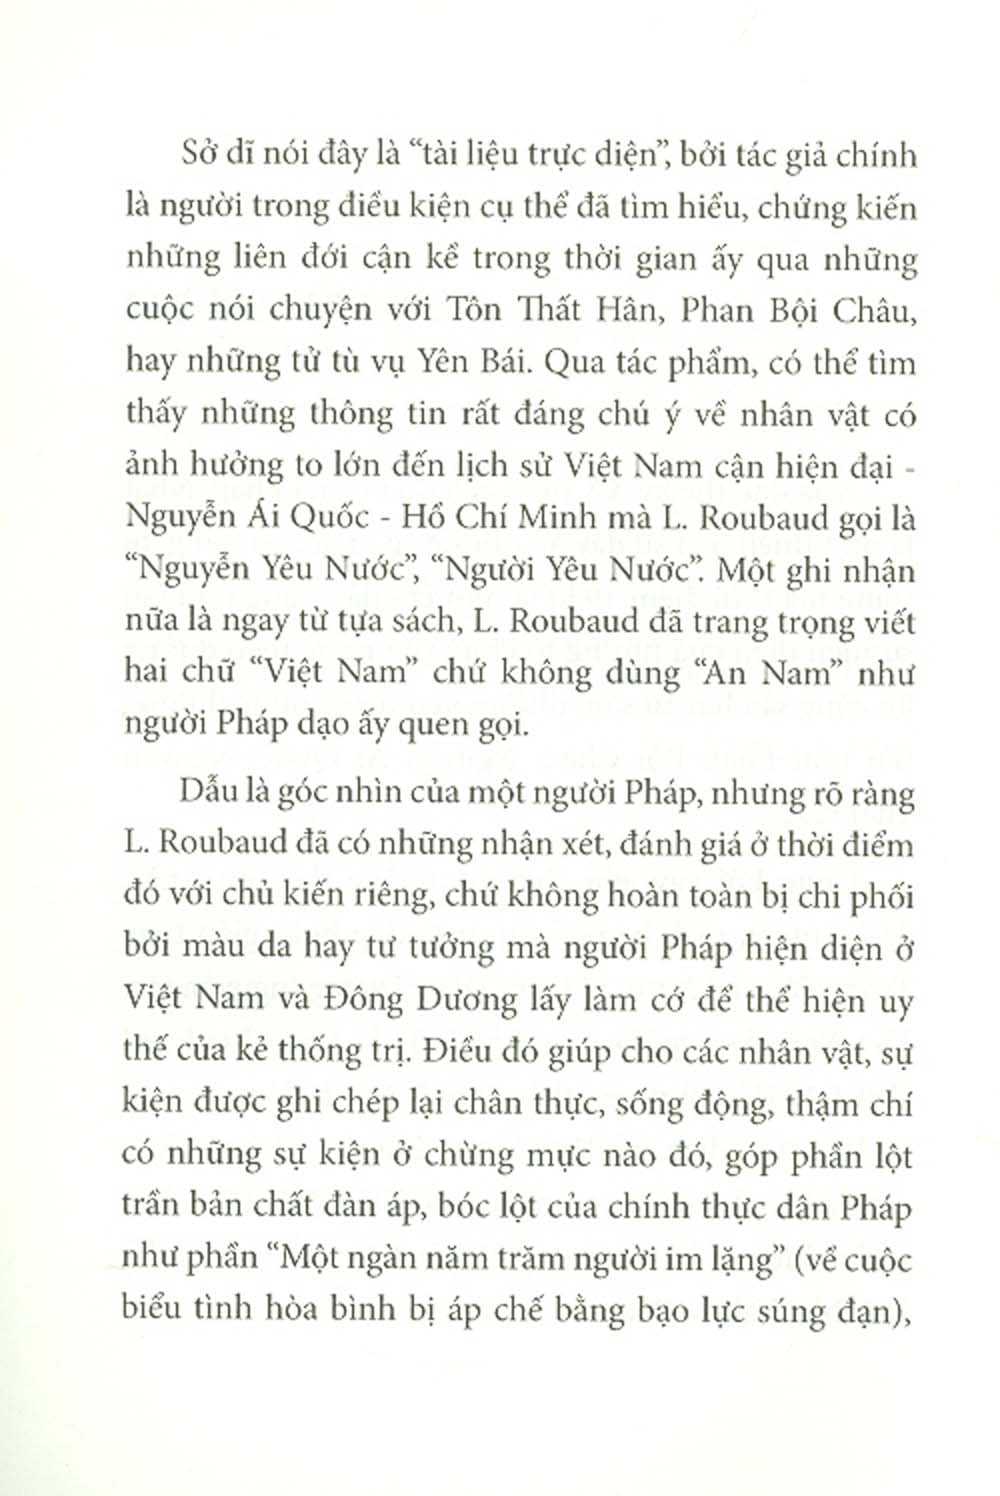 Việt Nam - Bi Thảm Đông Dương